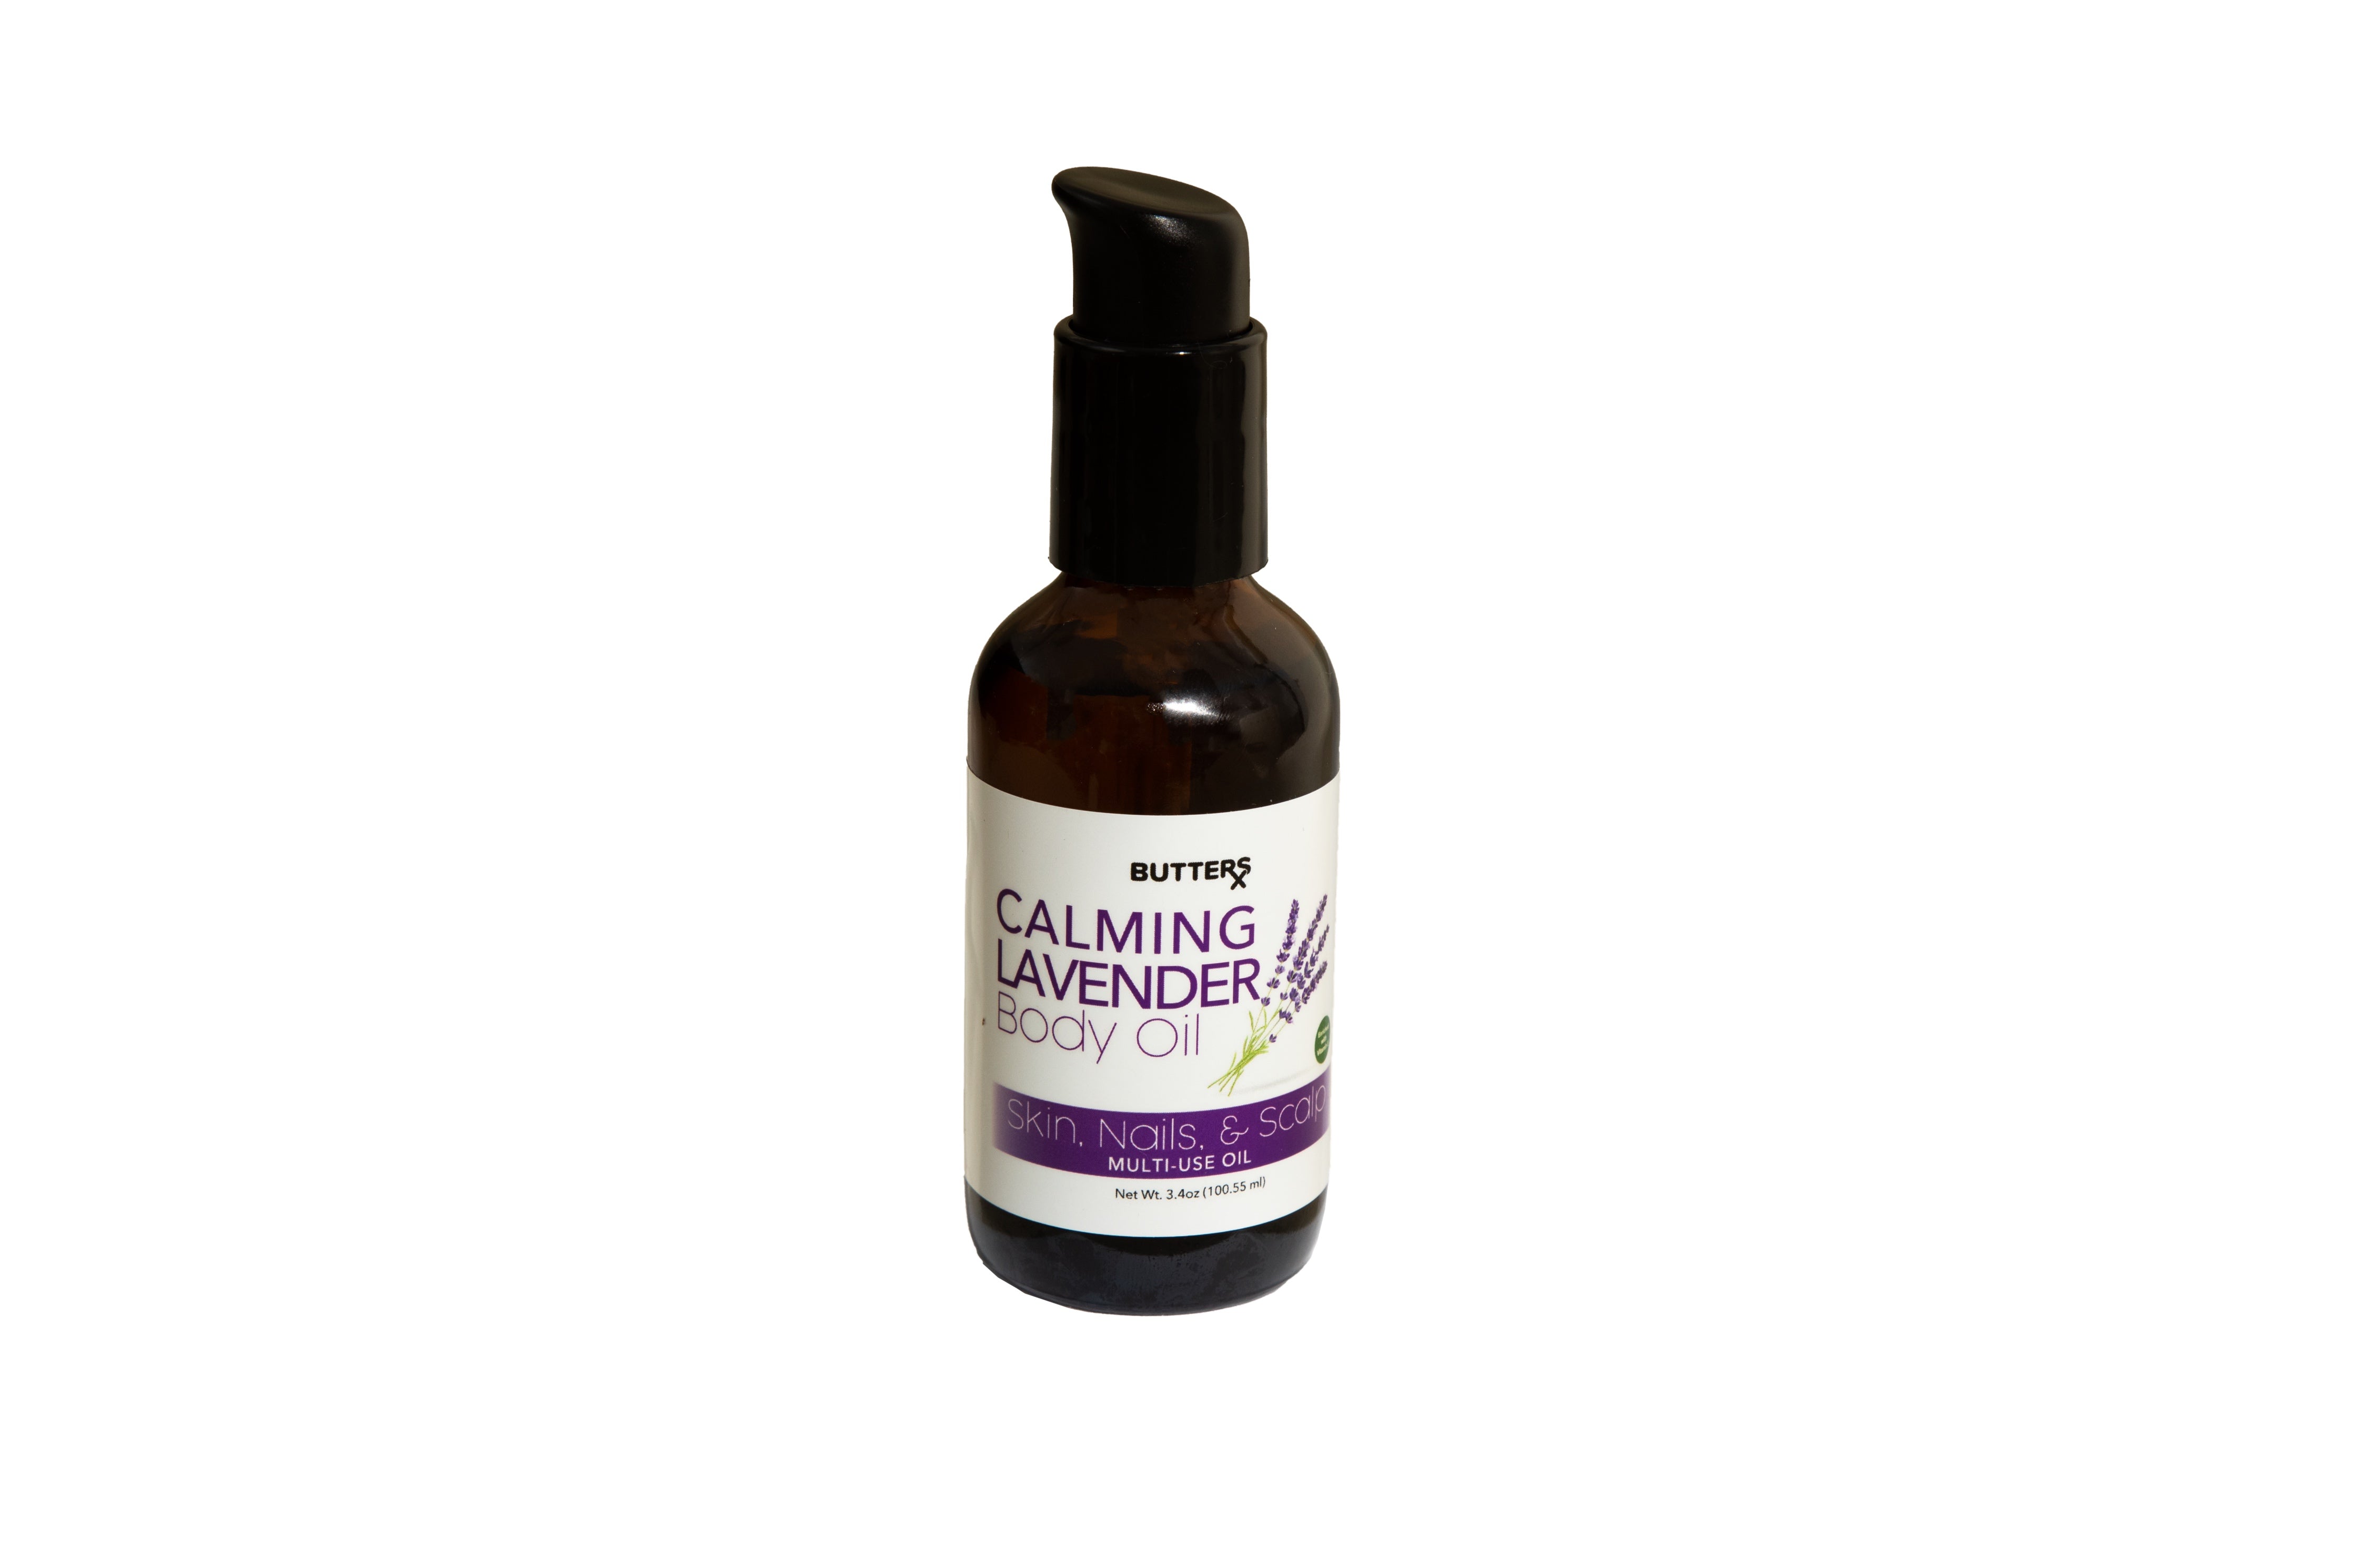 Multi-Use Body Oil Calming Lavender